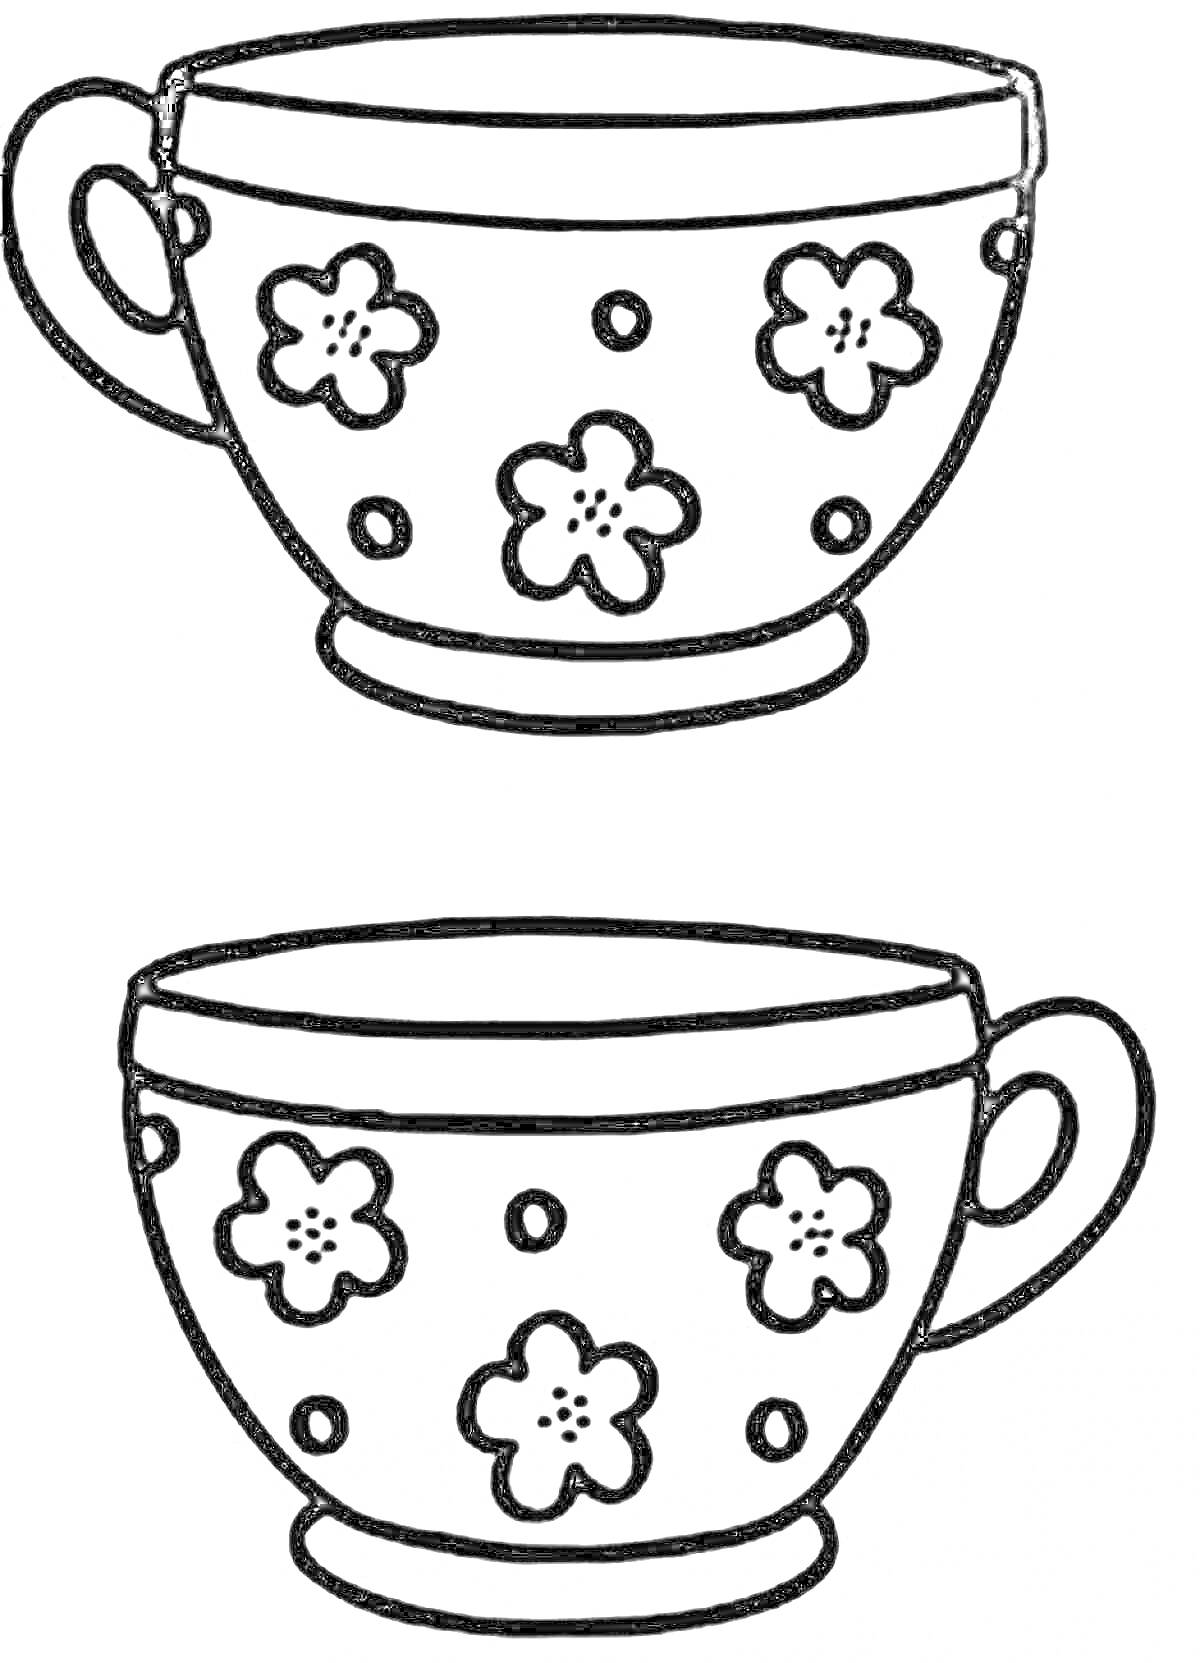 Раскраска Две кружки с цветочным орнаментом и точками